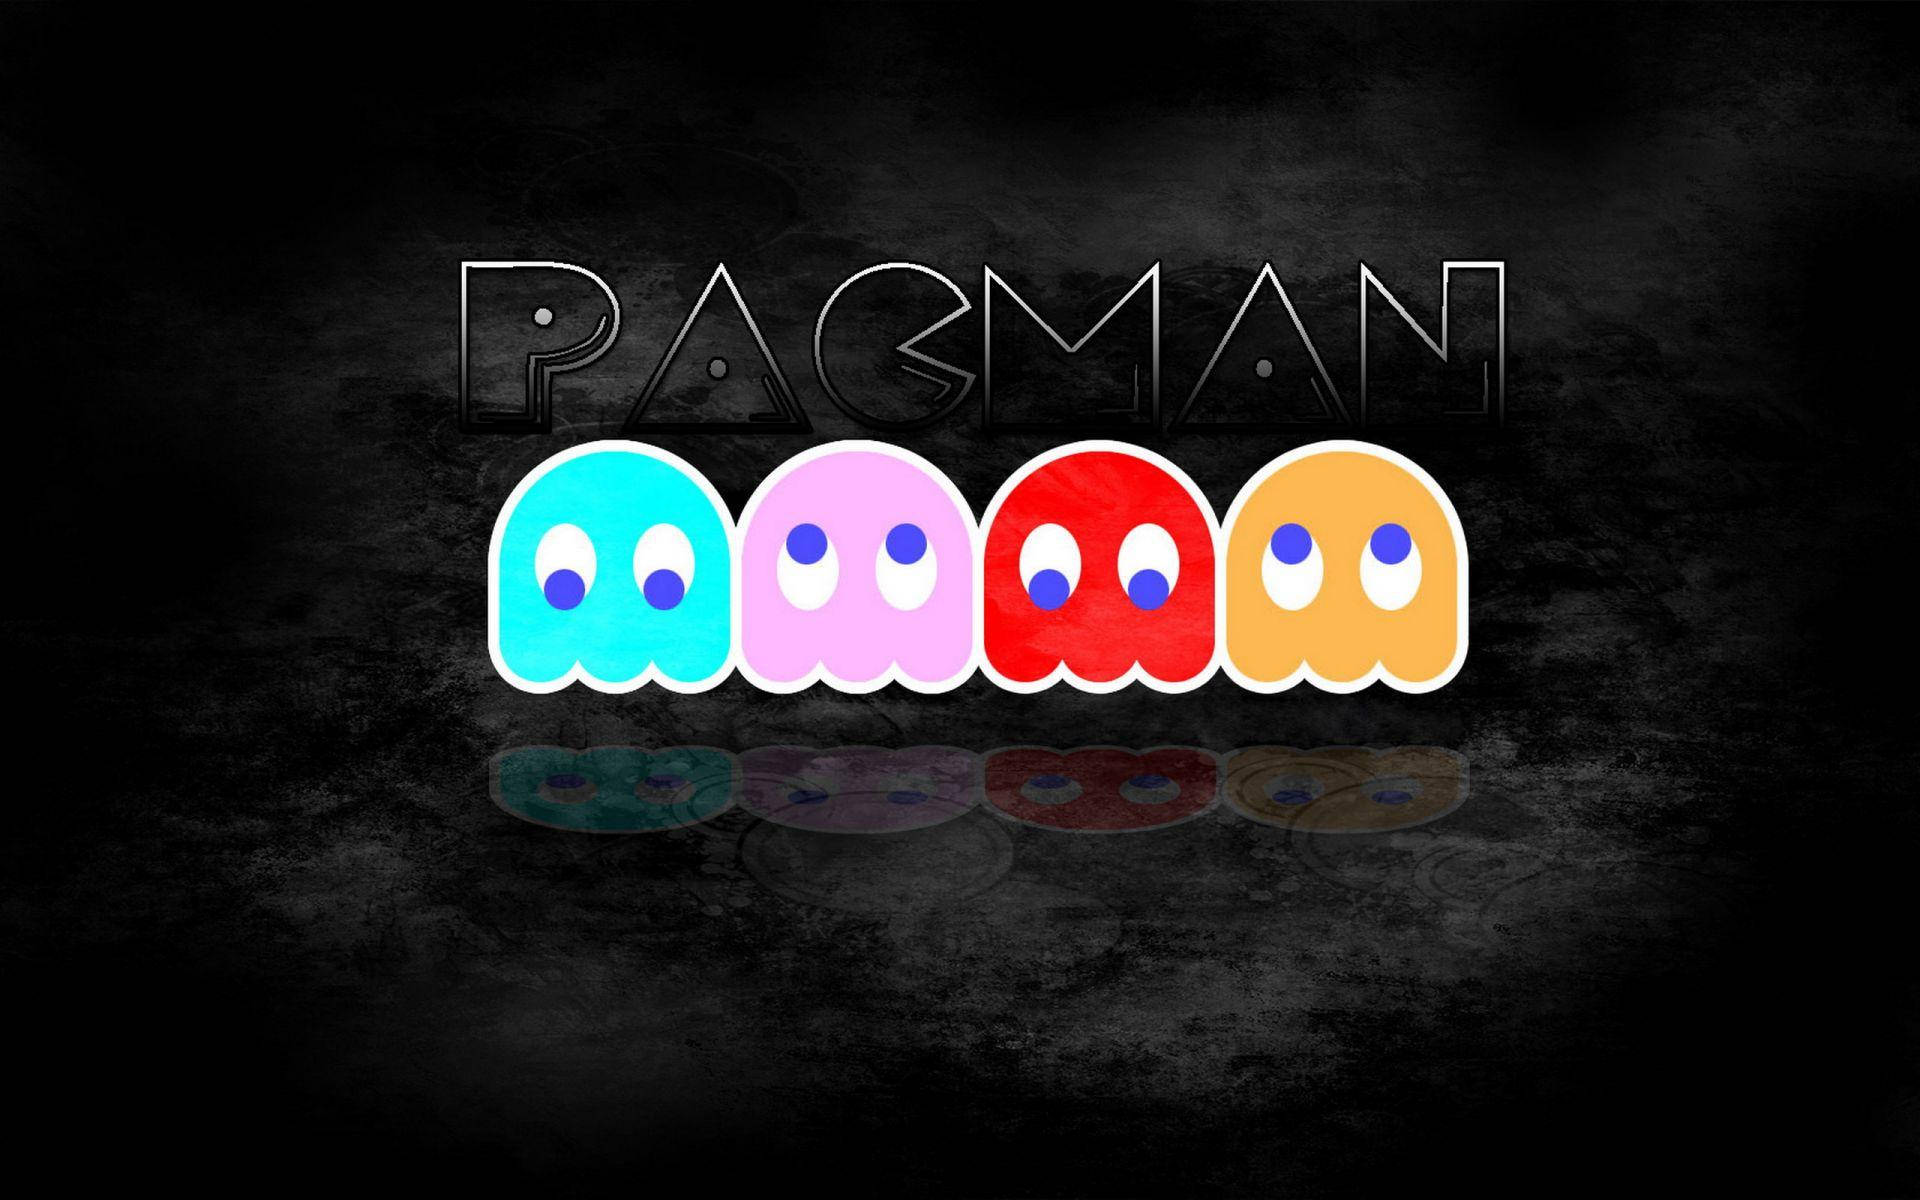 Personagensfantasmas Do Pac-man Papel de Parede